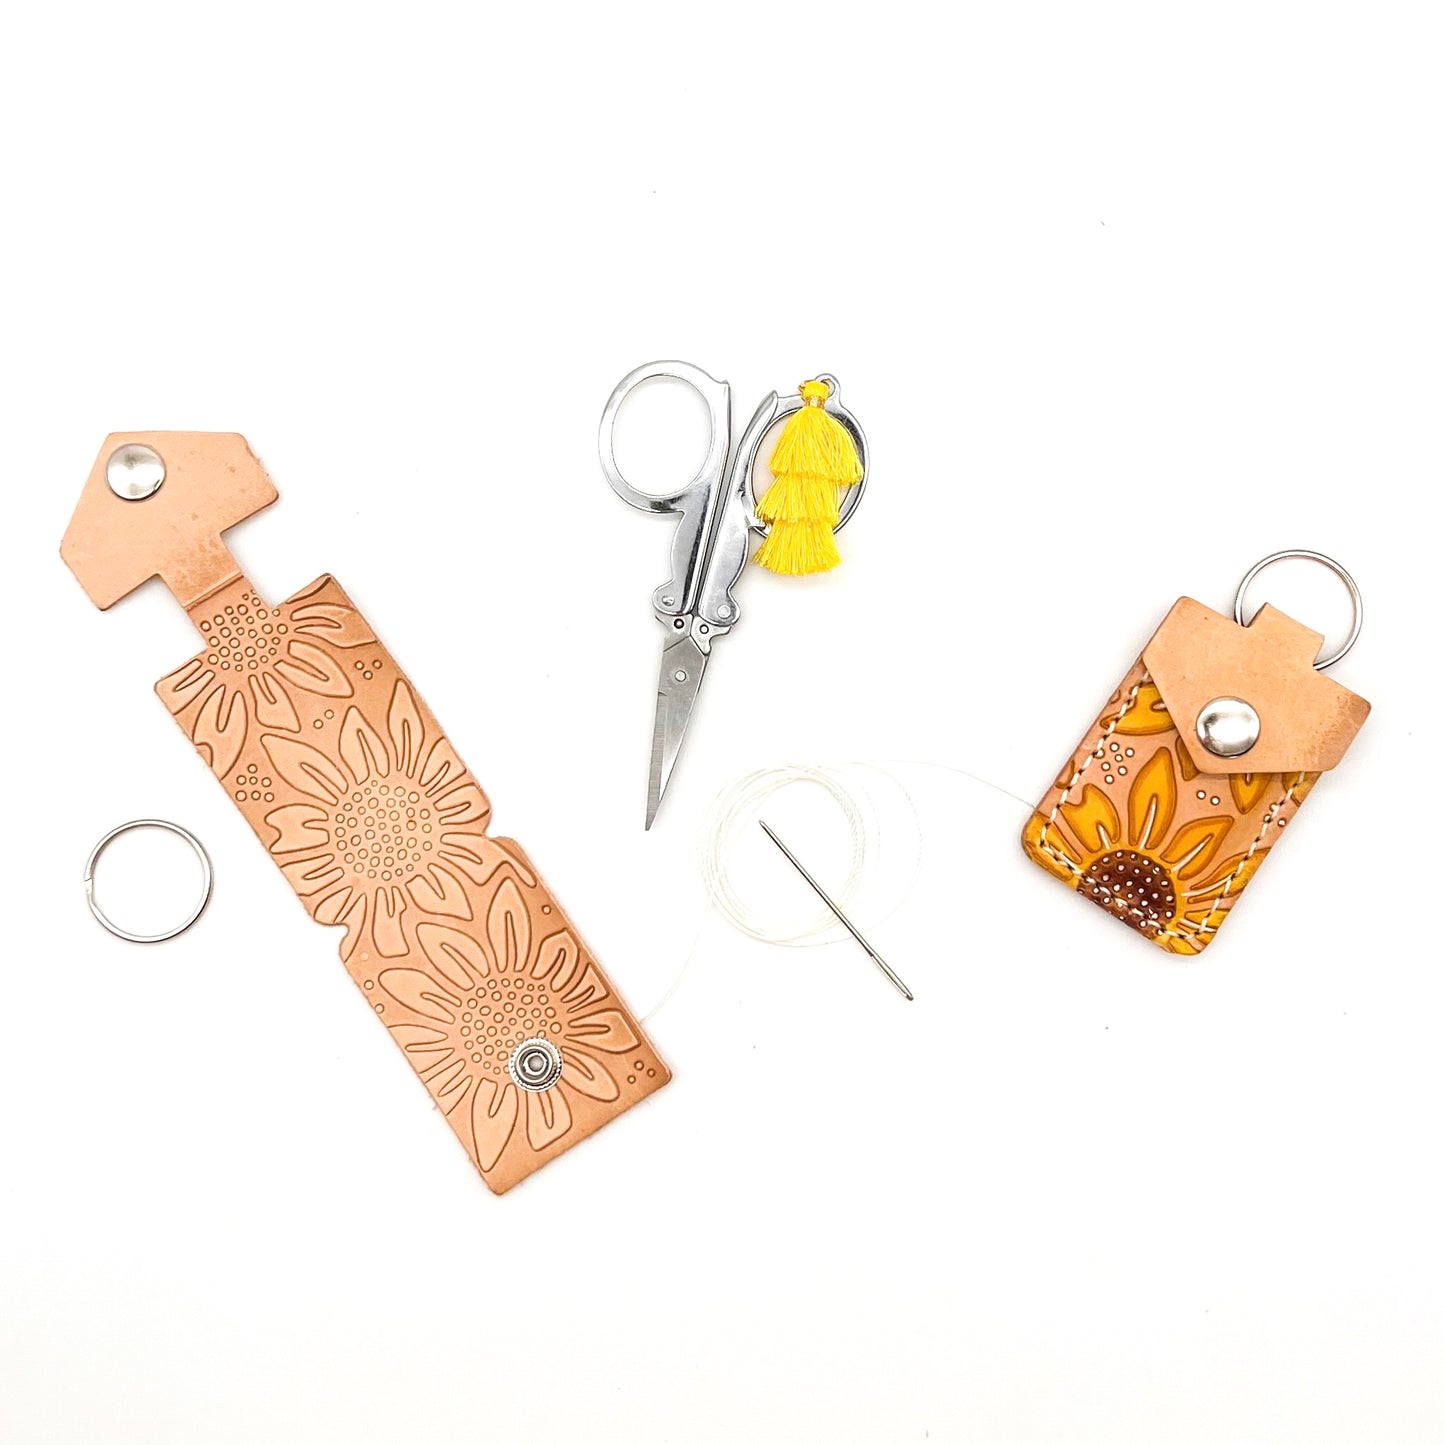 DIY Leather Scissor Pouch Bundle, Markerific